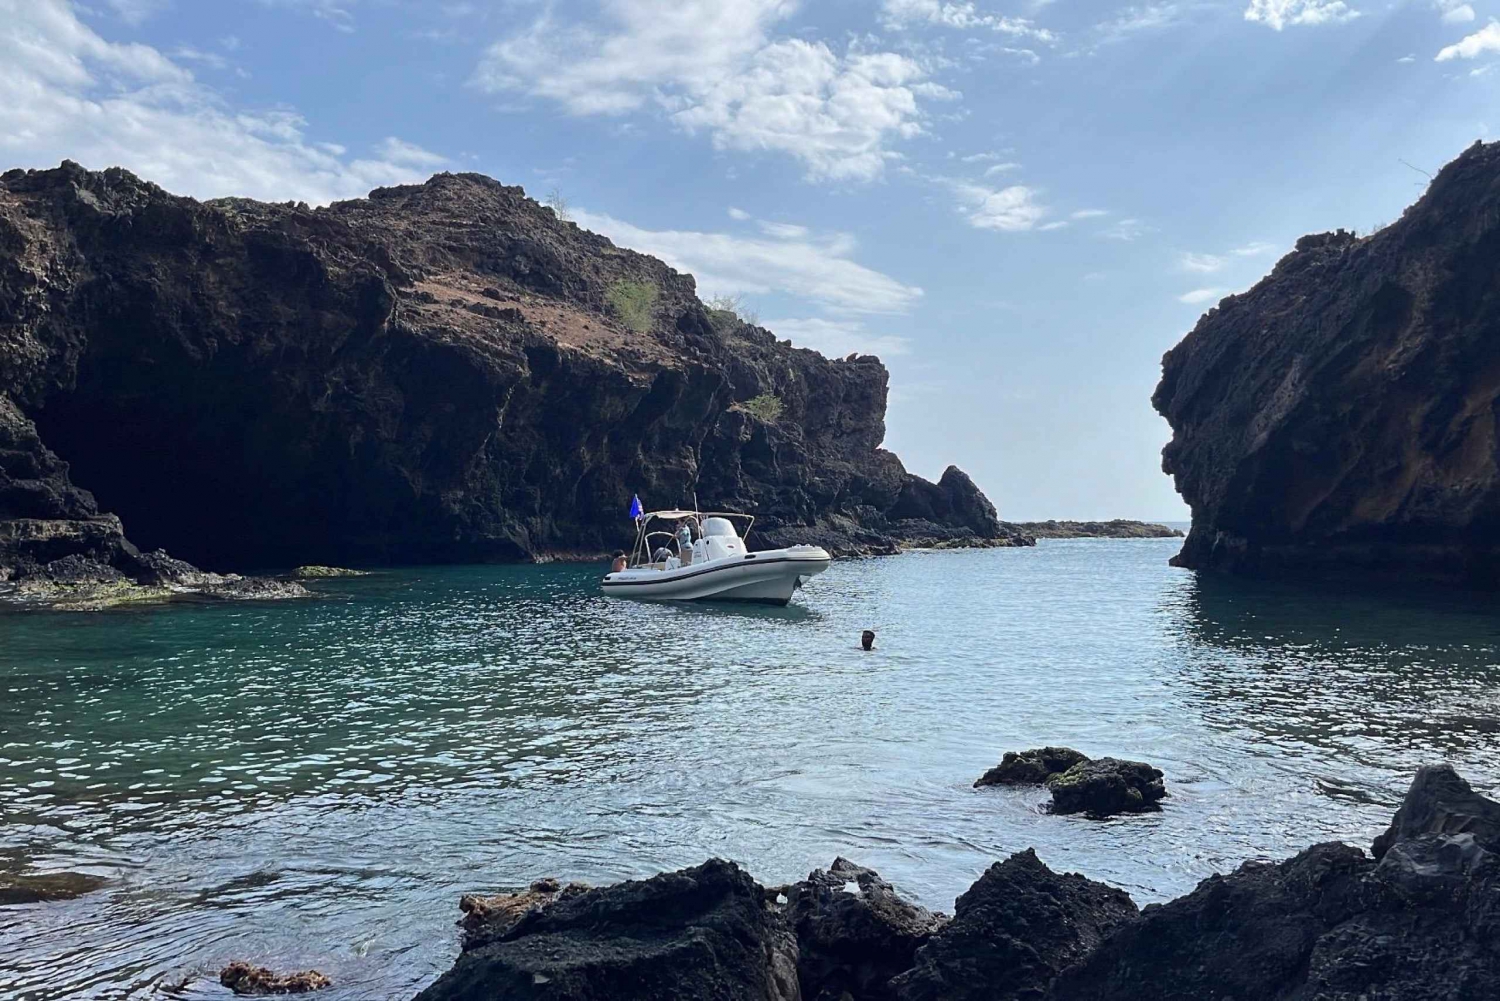 Tarrafal : Tour en bateau des grottes d'Aguas Belas avec plongée en apnée